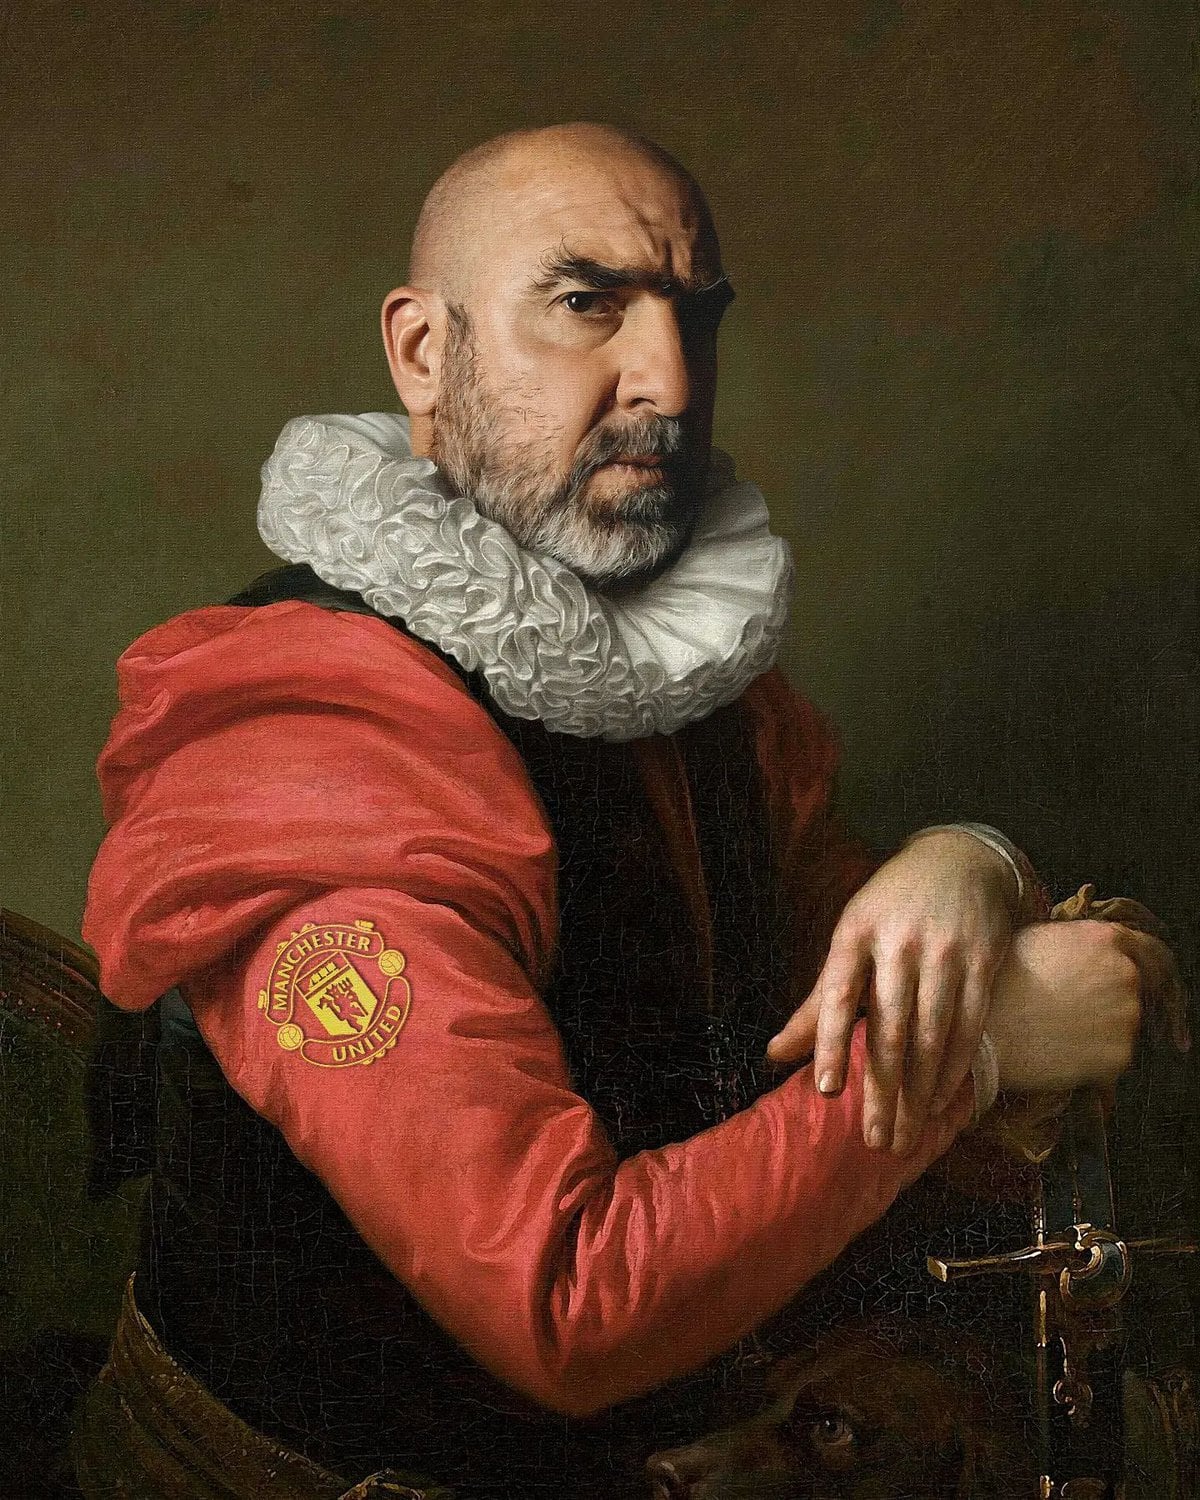 Портреты знаменитостей в стиле картин живописцев прошлых веков